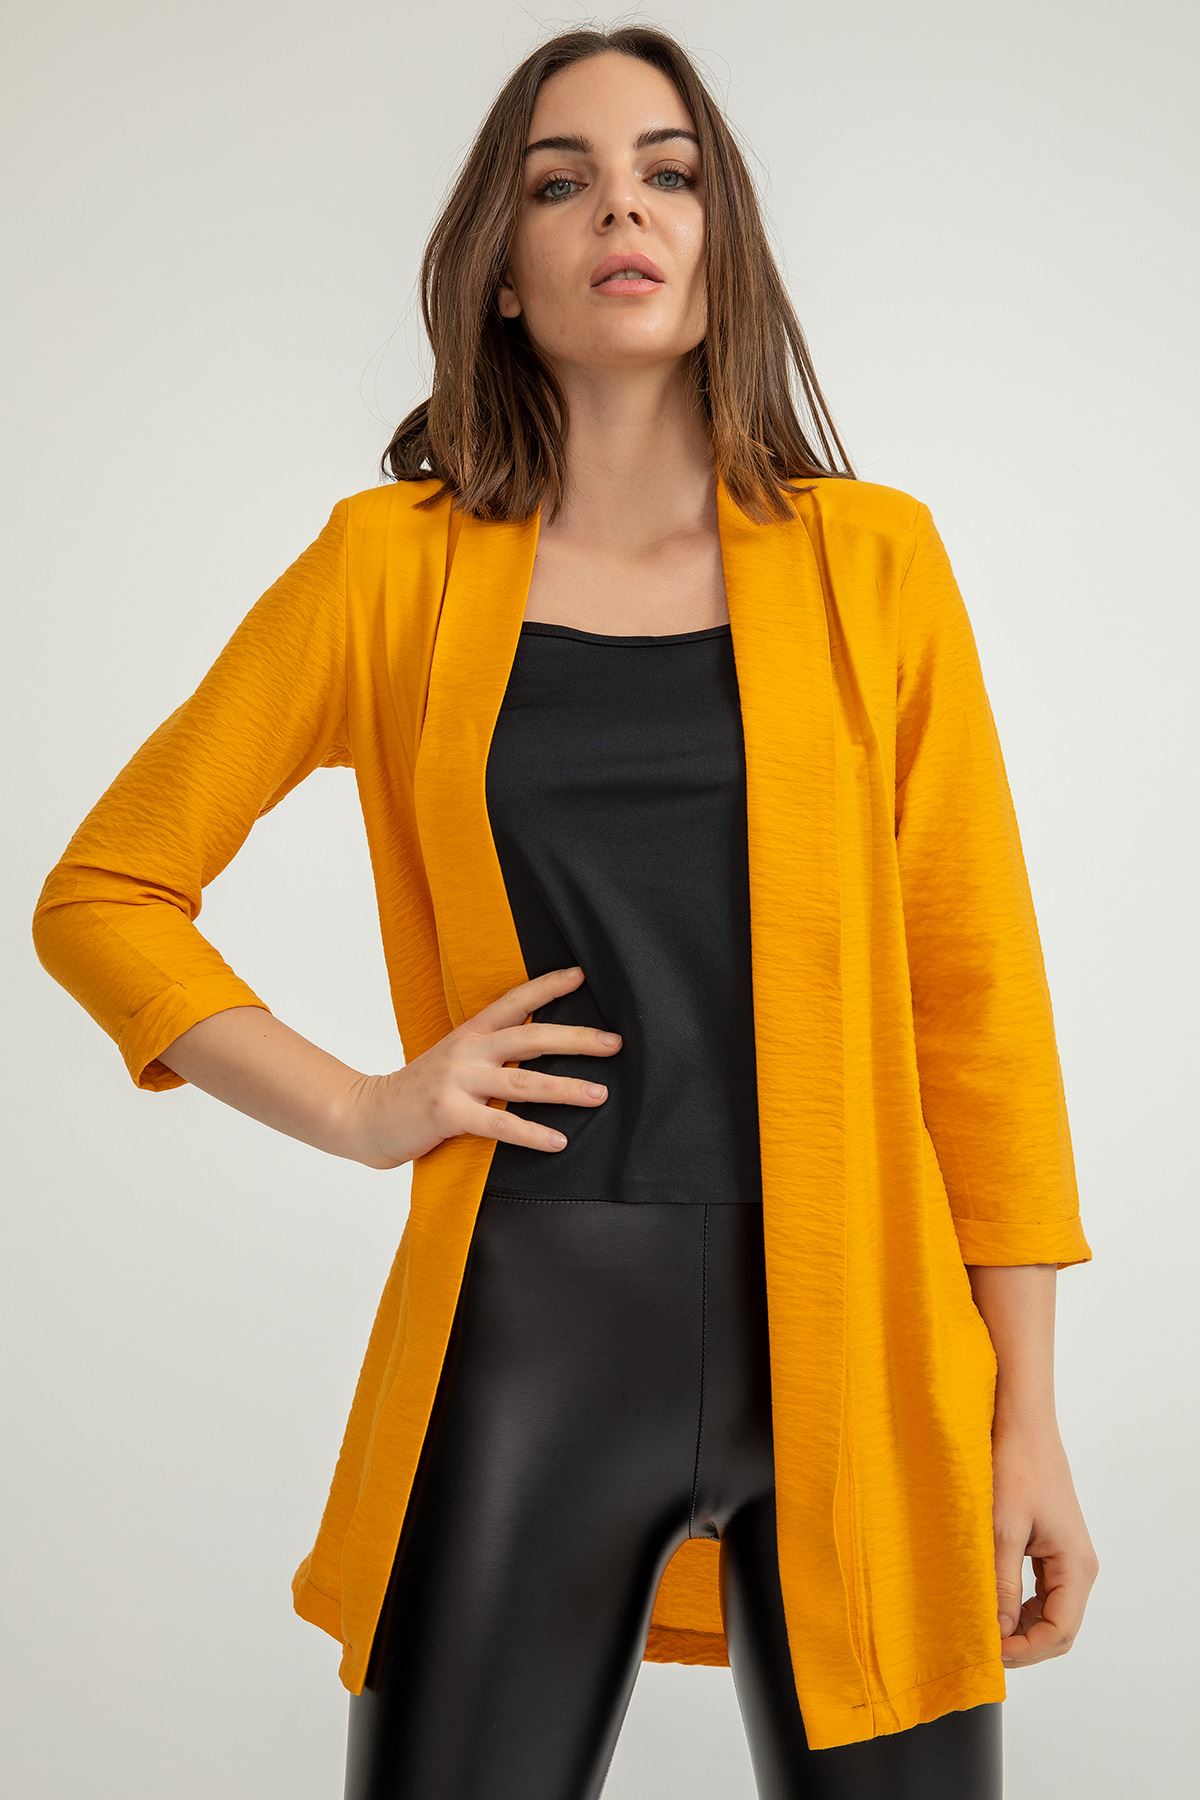 Aerobin Fabric Long Sleeve Shawl Collar Below Hip Comfy Women Jacket - Mustard